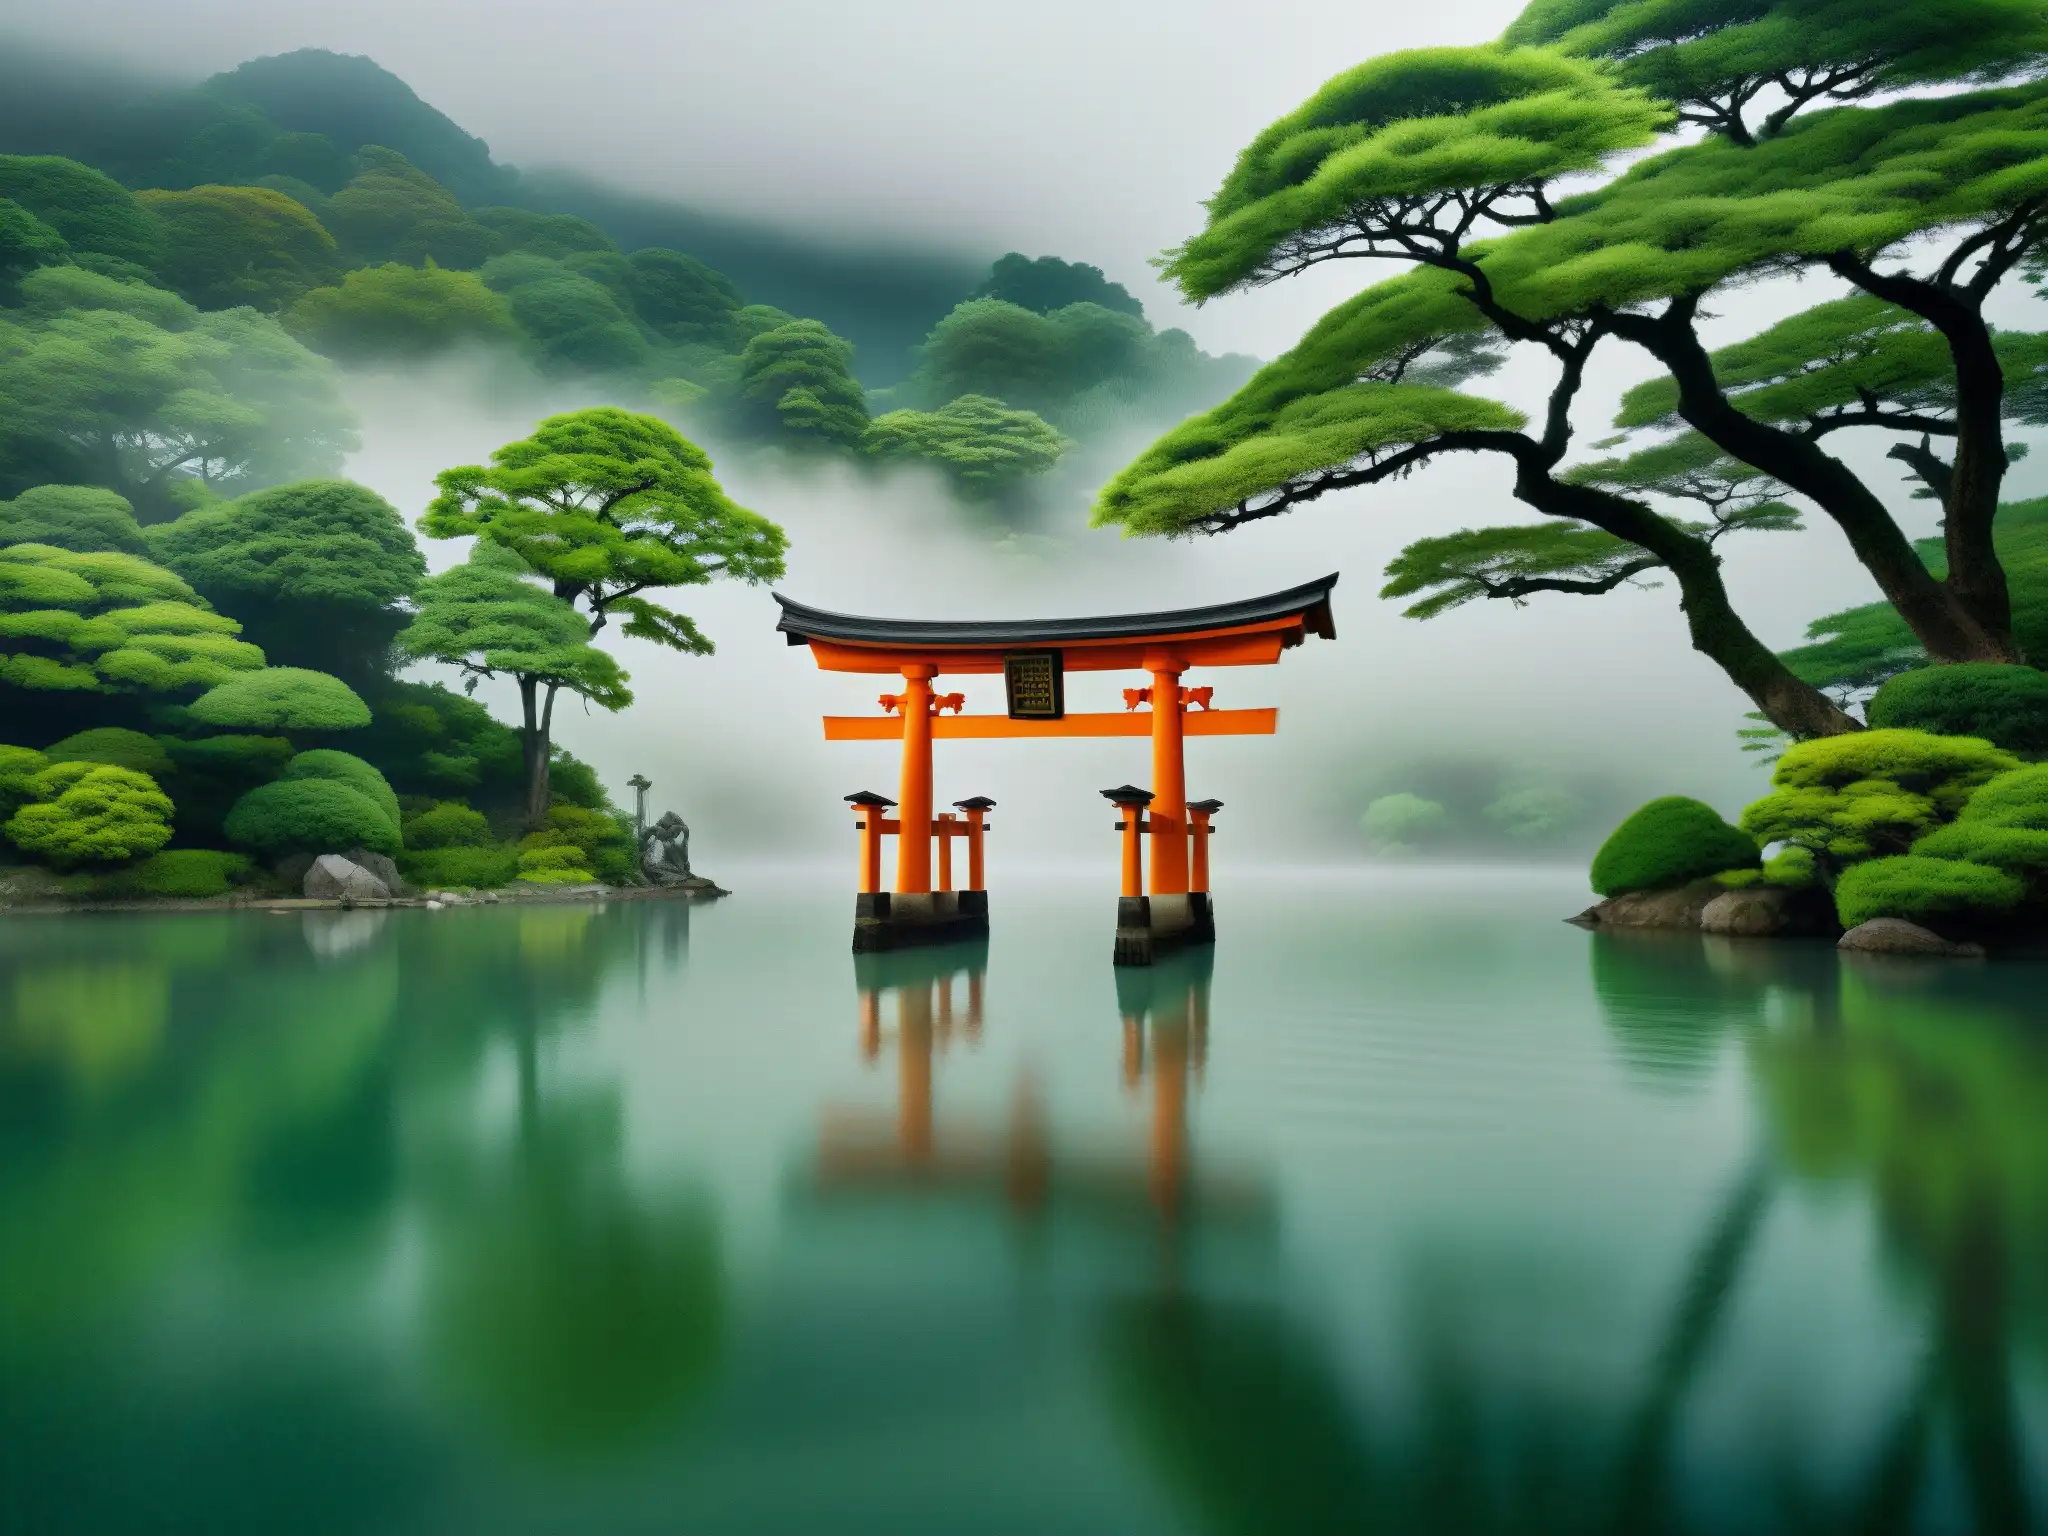 Un lago sereno envuelto en niebla, con un torii japonés parcialmente sumergido